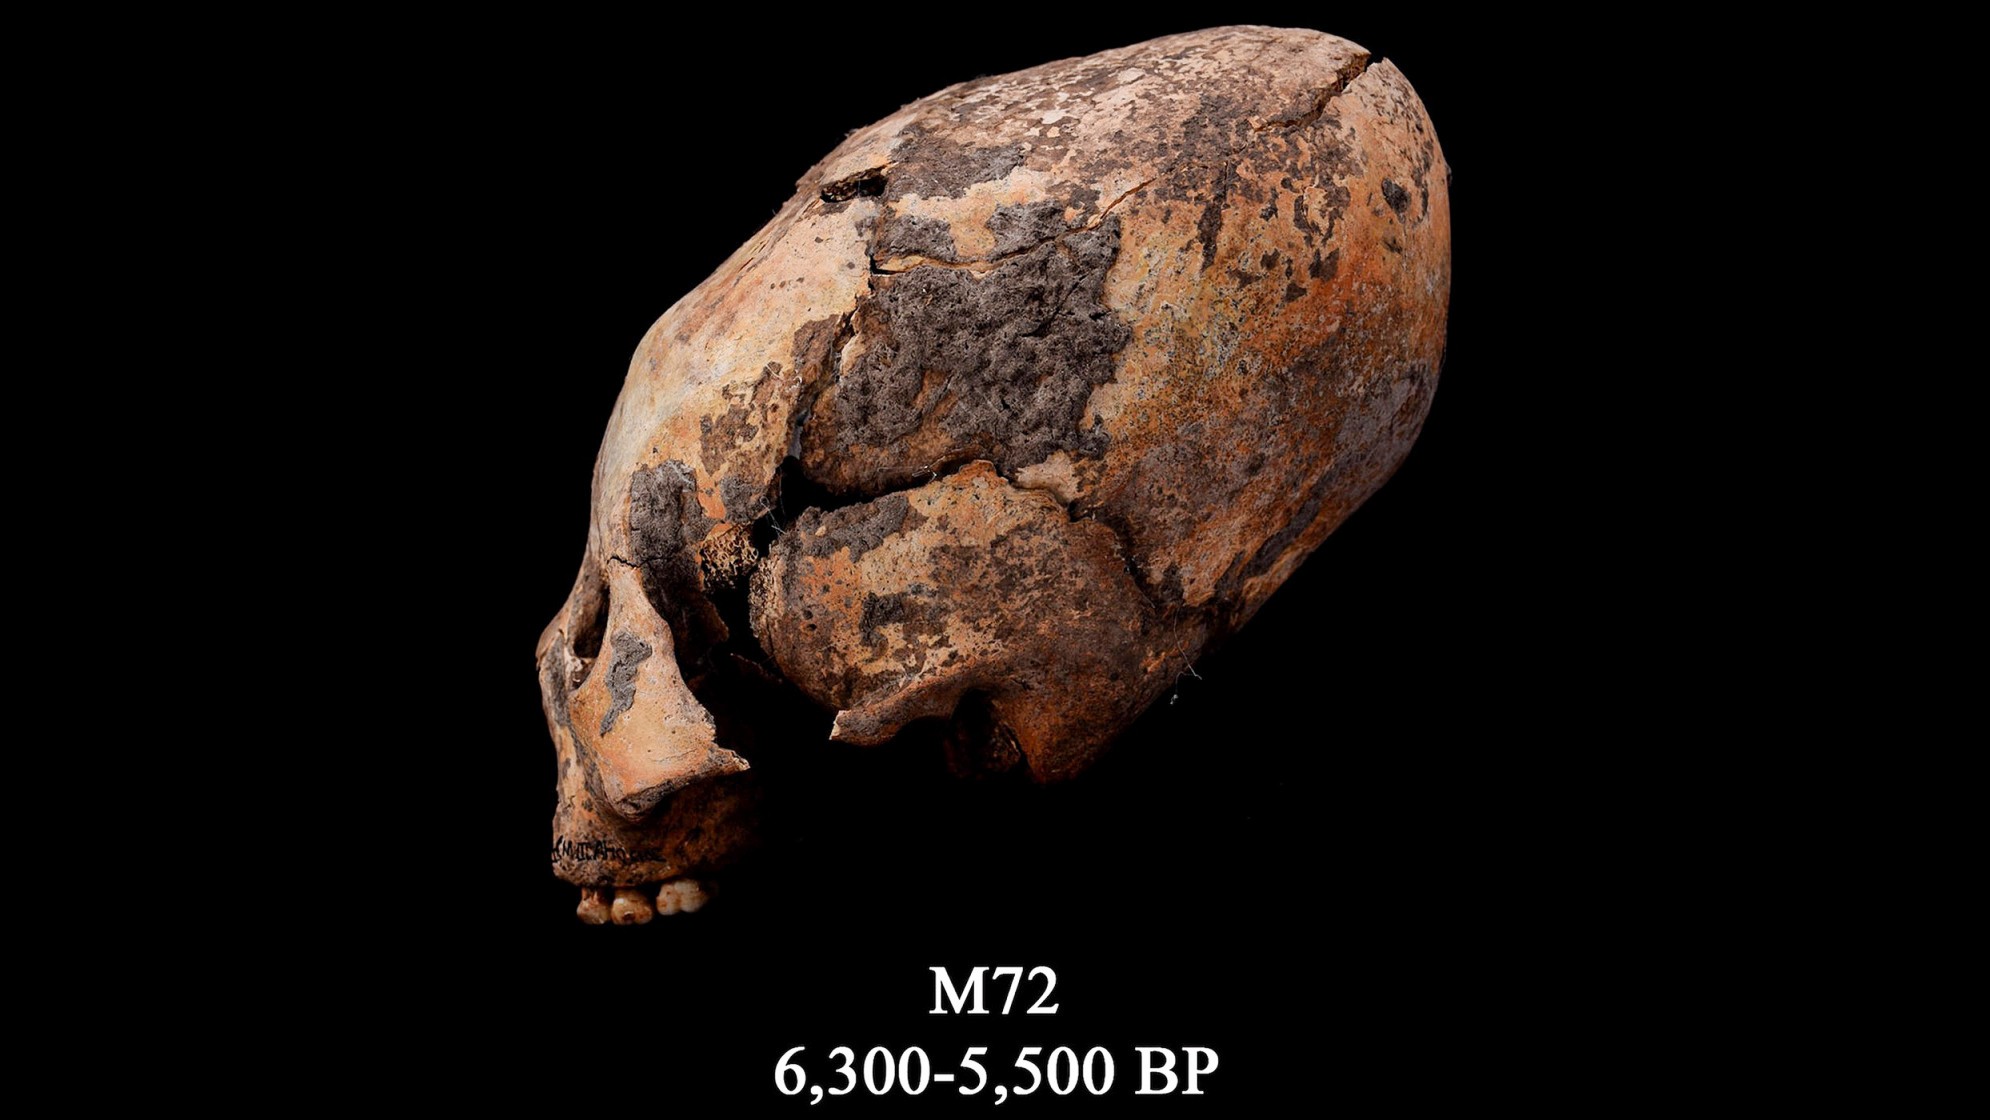 Череп известен как M72. Этот измененный человеческий череп был найден на северо-востоке Китая и был намеренно модифицирован.